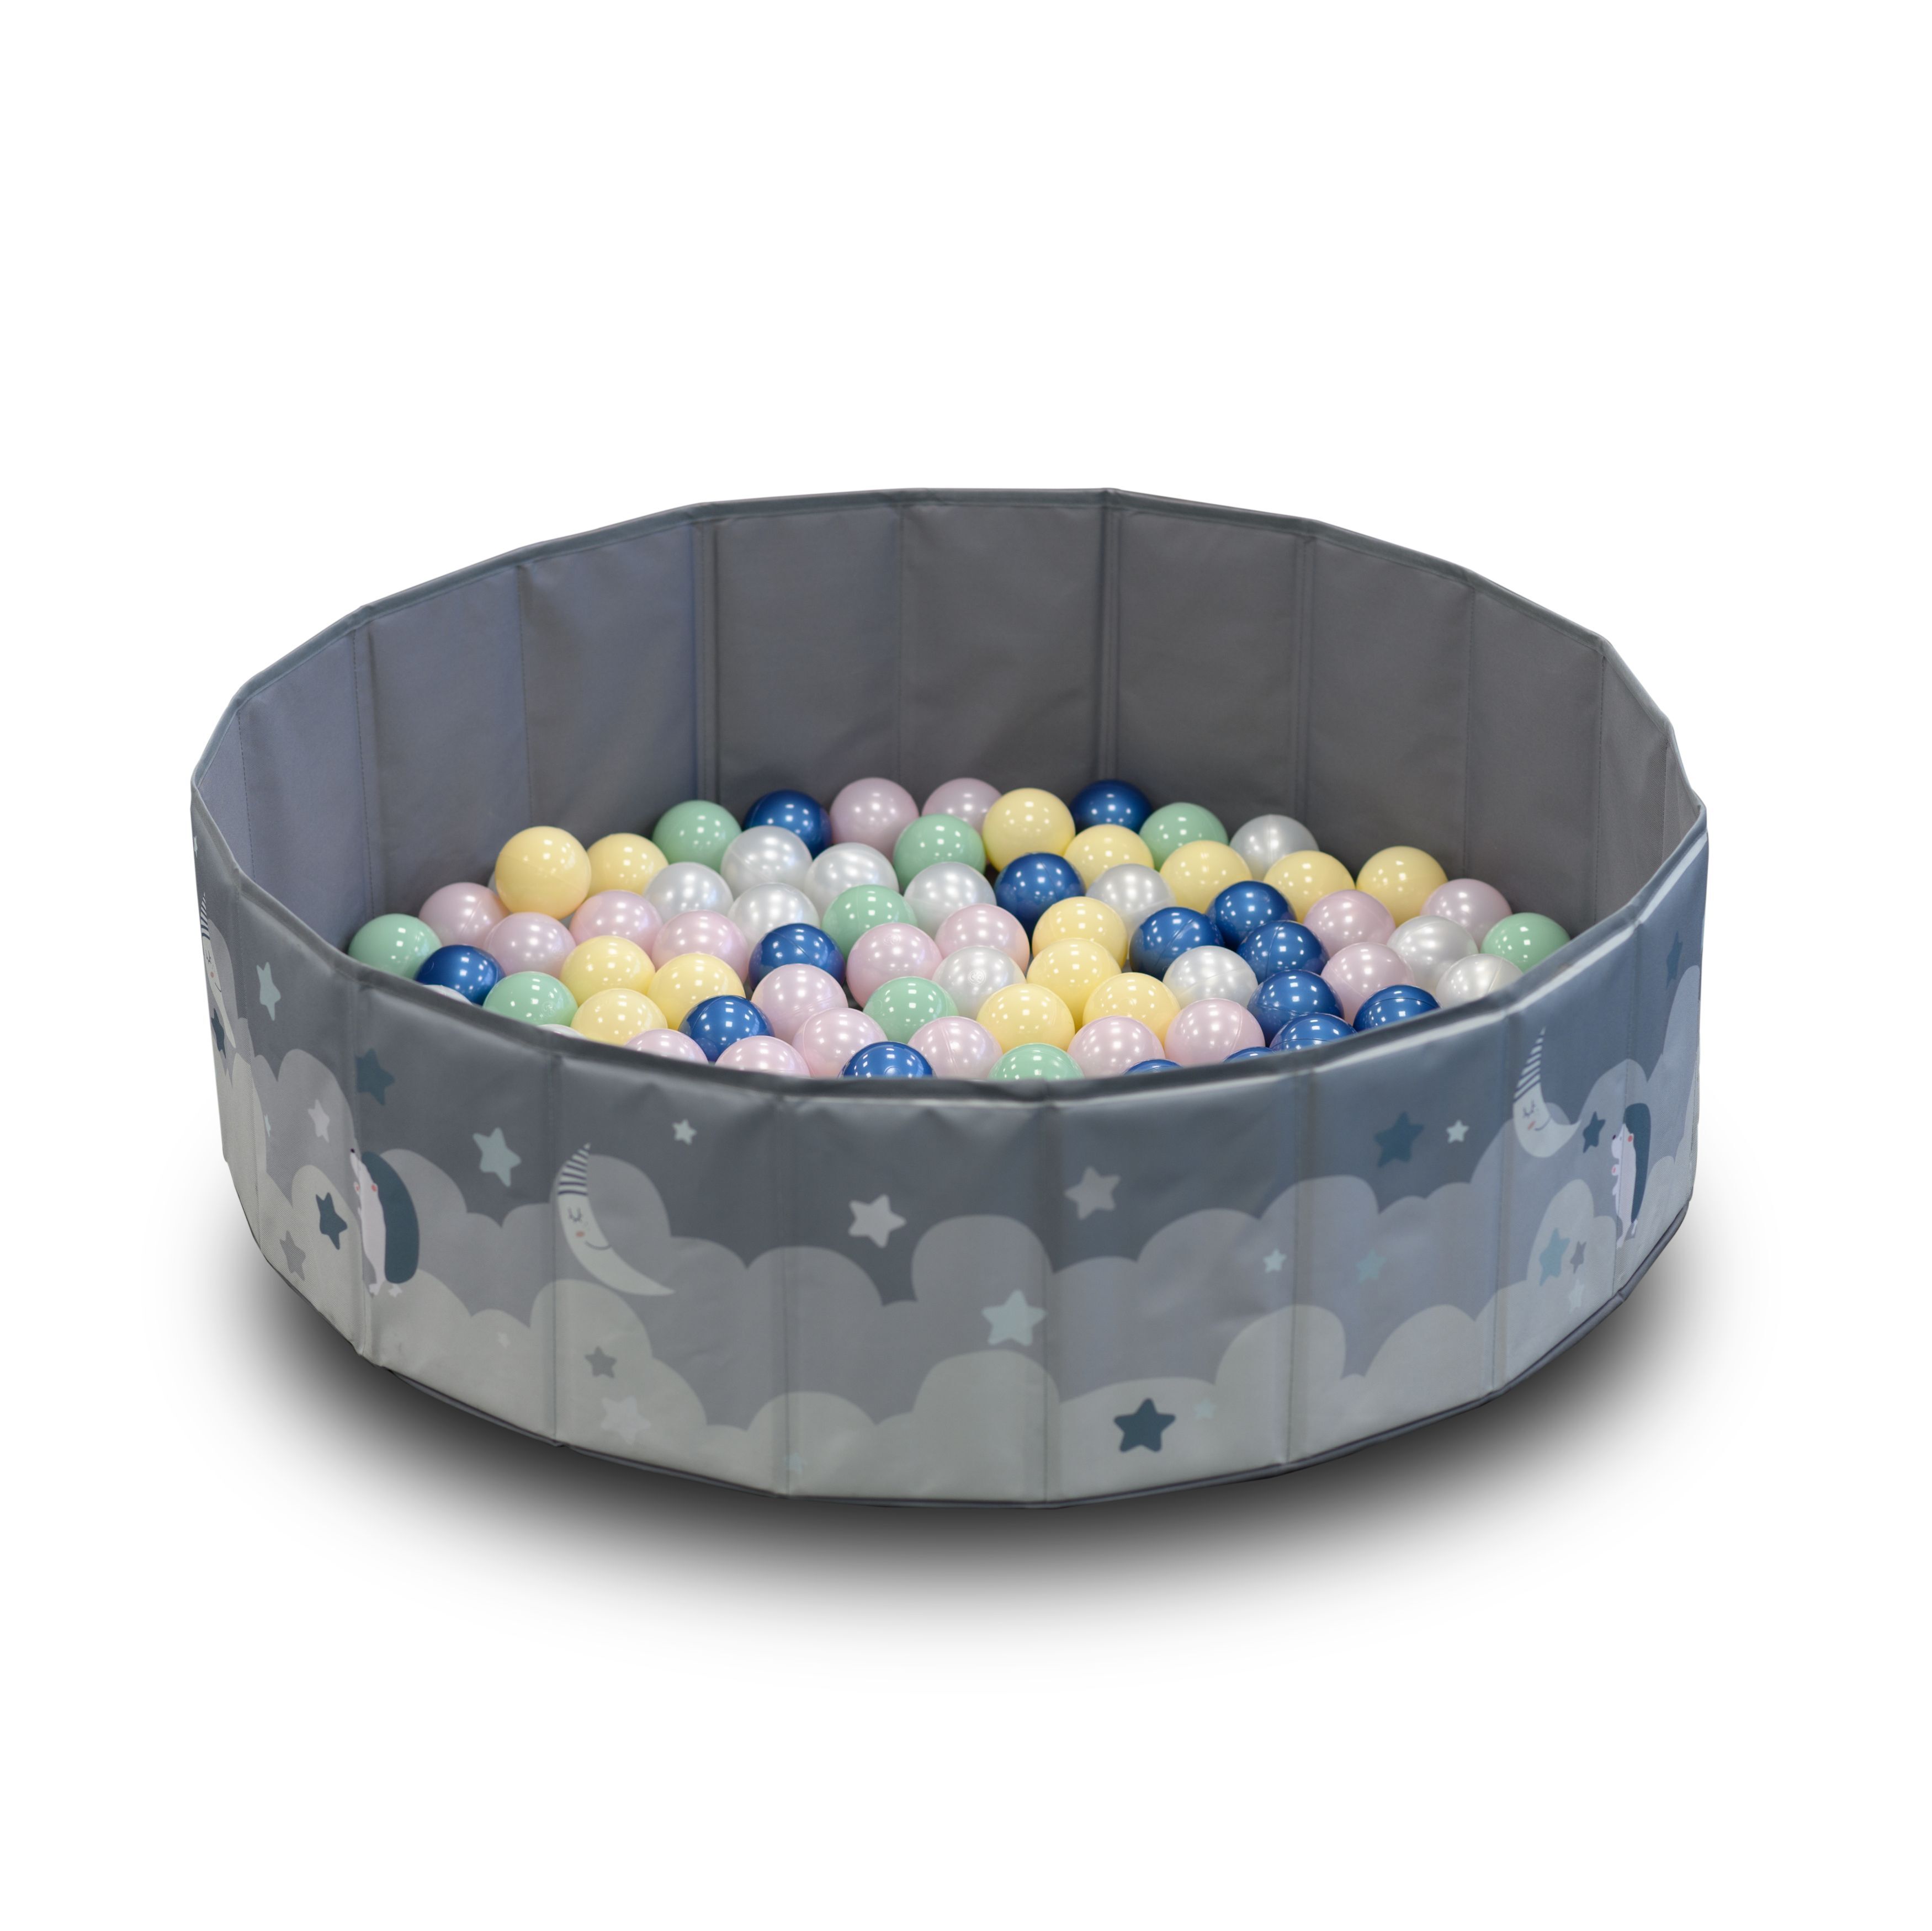 Детский сухой бассейн UNIX Kids Moon Grey, 150 шариков 5 цветов, складной, 100 см